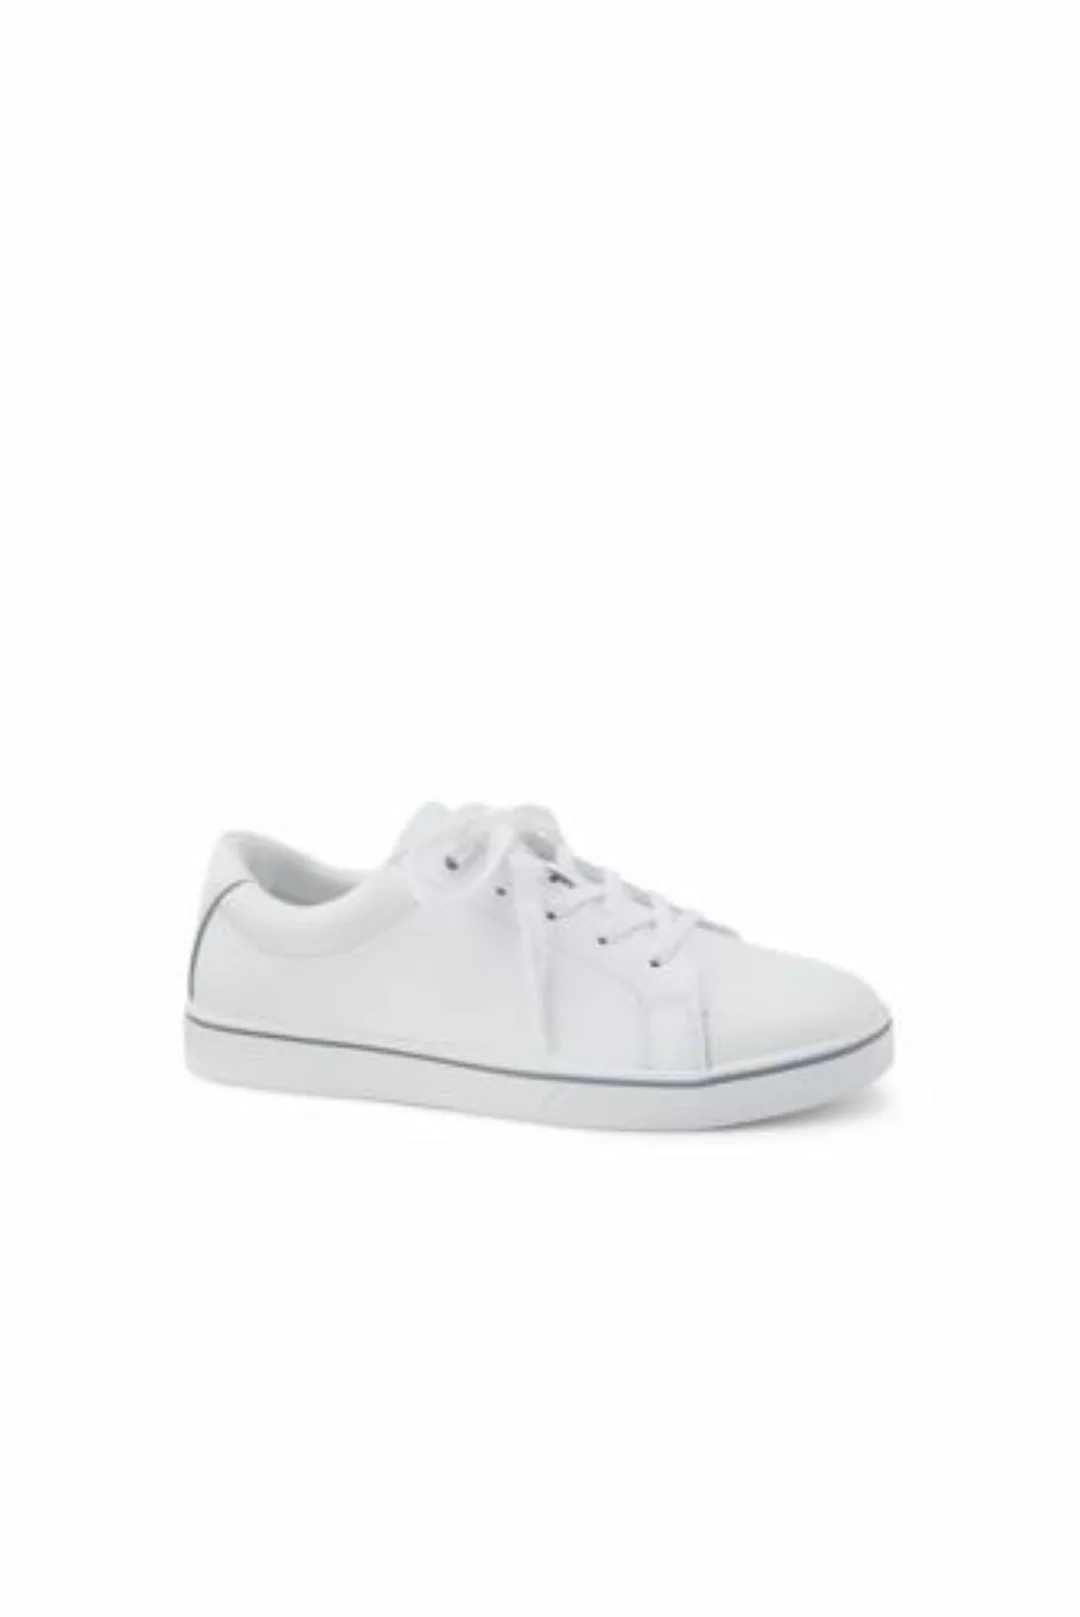 Sneaker, Damen, Größe: 37 Normal, Weiß, Leder, by Lands' End, Weiß Leder günstig online kaufen